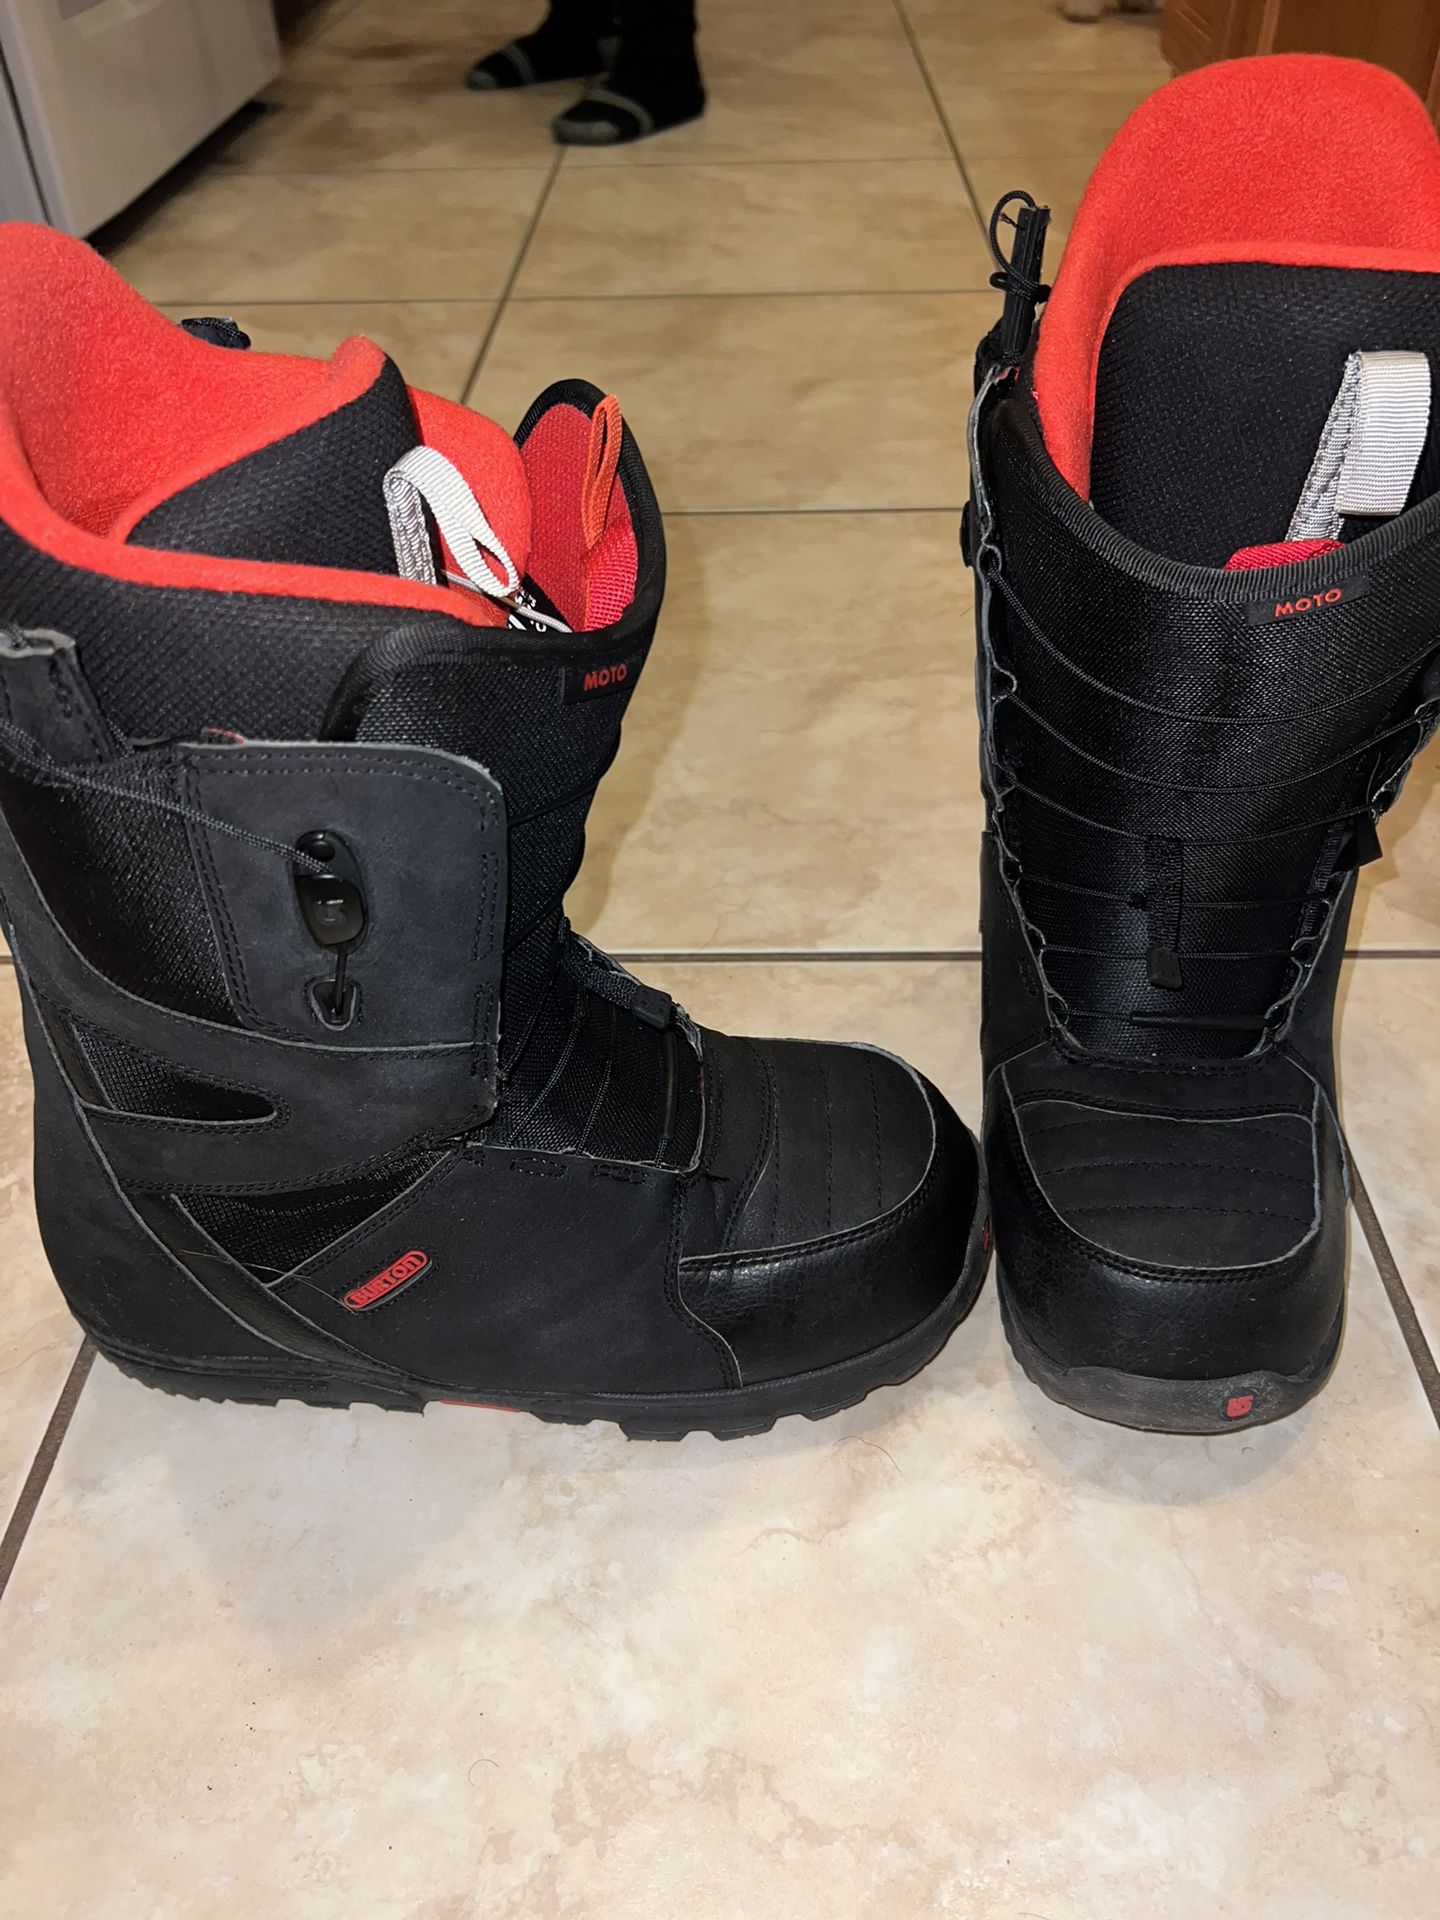 Buen sentimiento Sobrio colegio Burton Imprint 1 11.0M Snowboard Boots for Sale in Goodyear, AZ - OfferUp